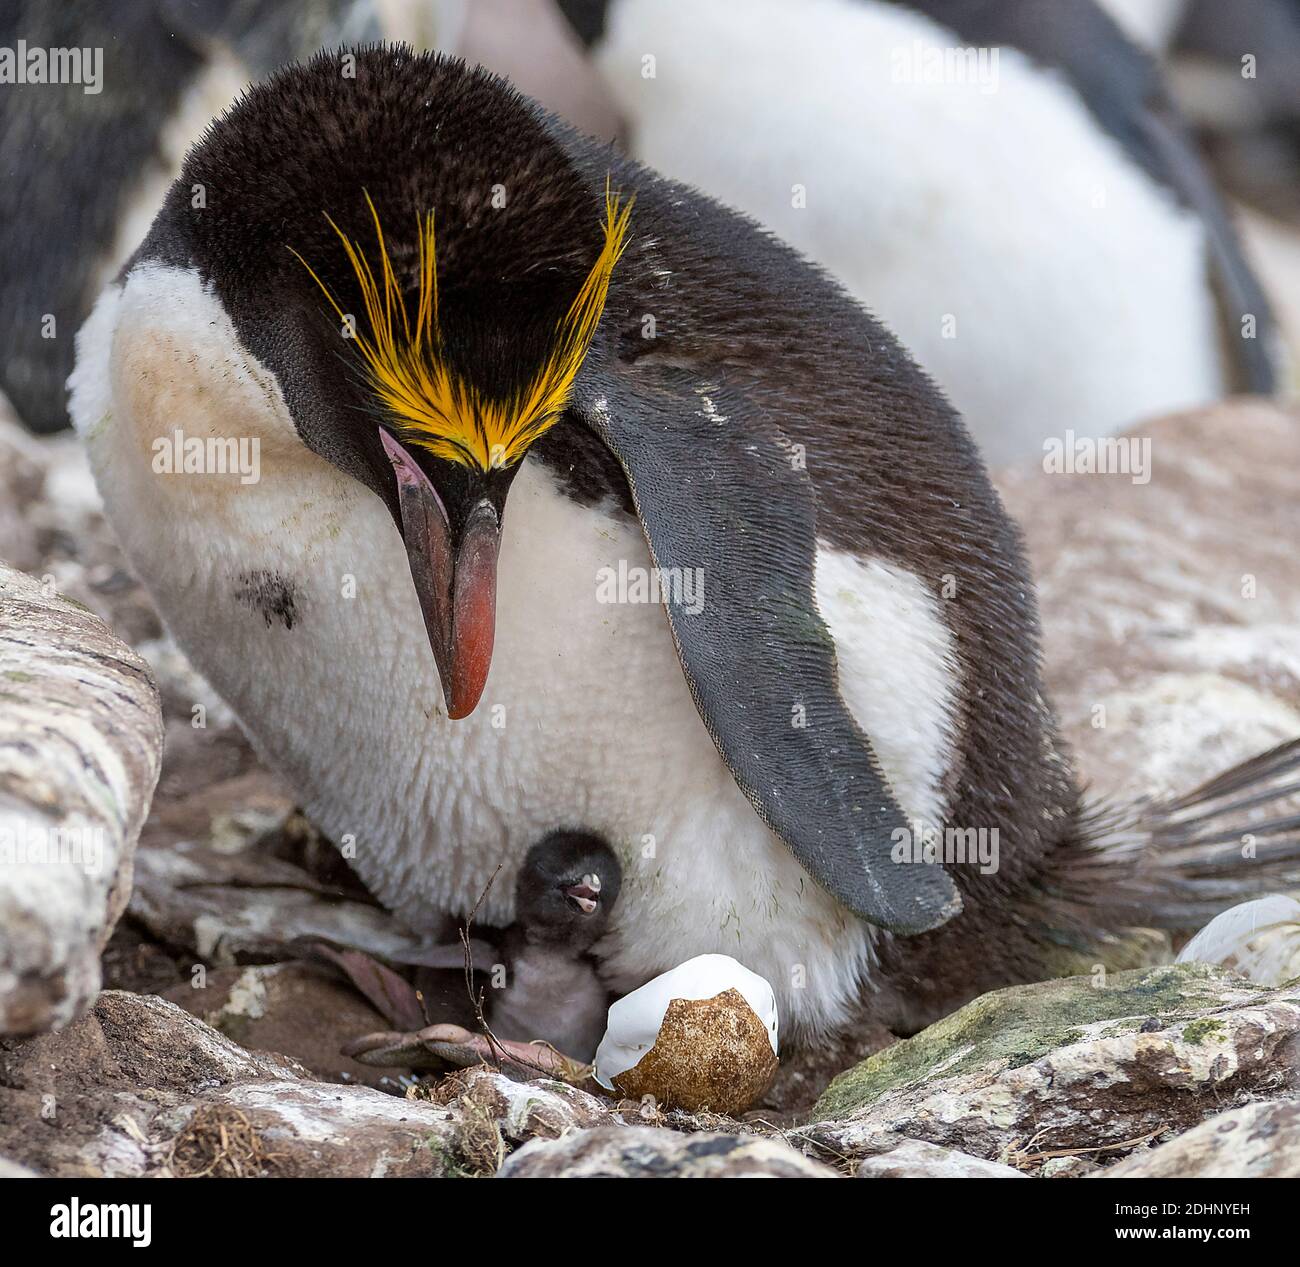 Pingouin macaroni (Eudyptes chrysolophus) avec poussin sur son nid. Photo de l'île de Sounders, les îles Falkland. Banque D'Images